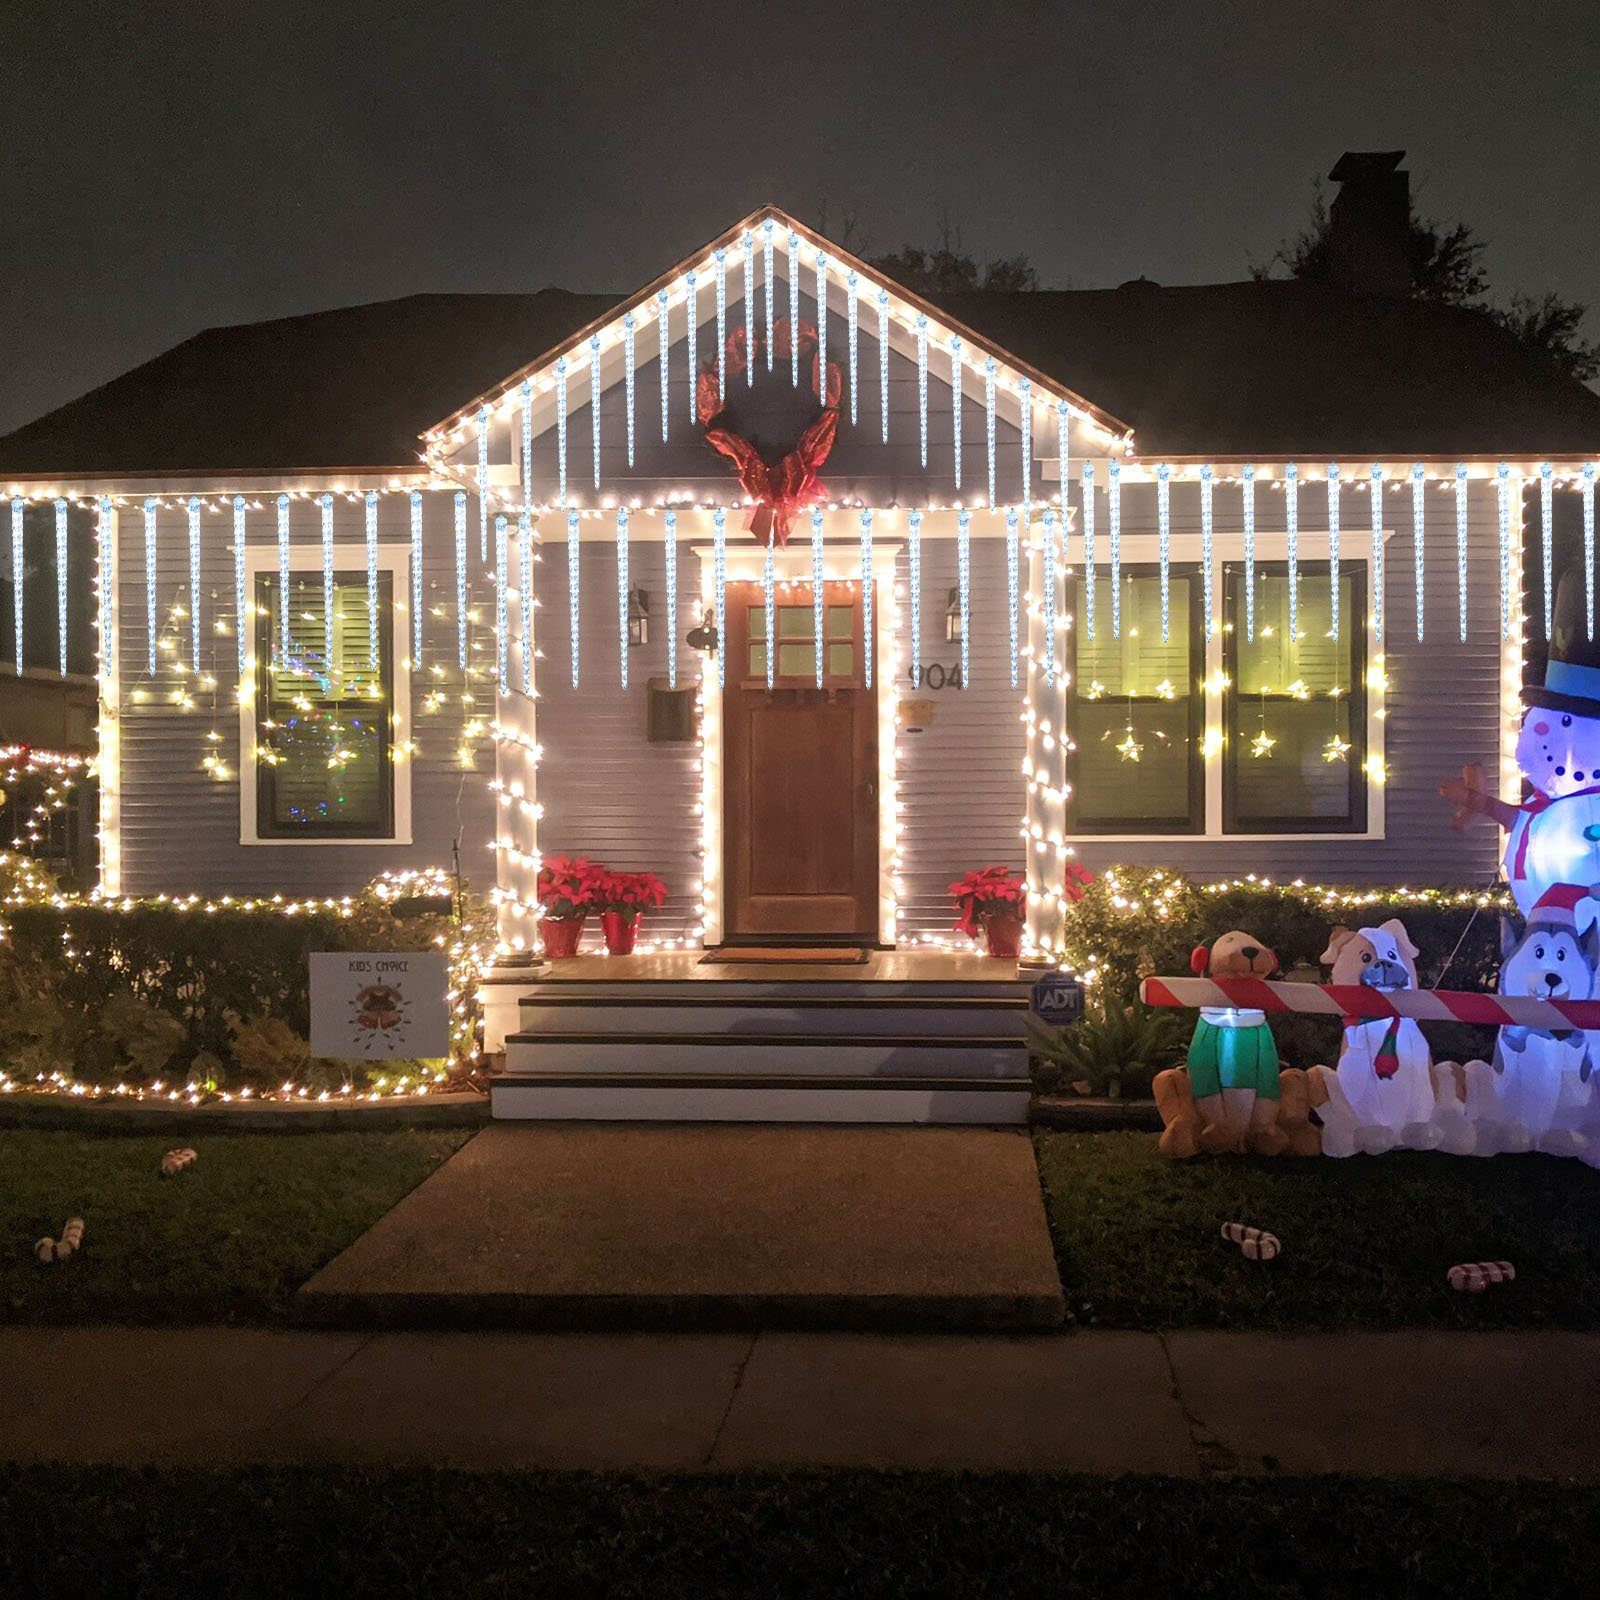 LED 288-flammig, Weihnachten Eiszapfen, 2.8M, 288LEDs, 42.5cm, 8 Eiszapfen Deko wasserdicht, Traufe Rosnek anschliessbar, LED-Lichtervorhang Bäume, für Lichter,